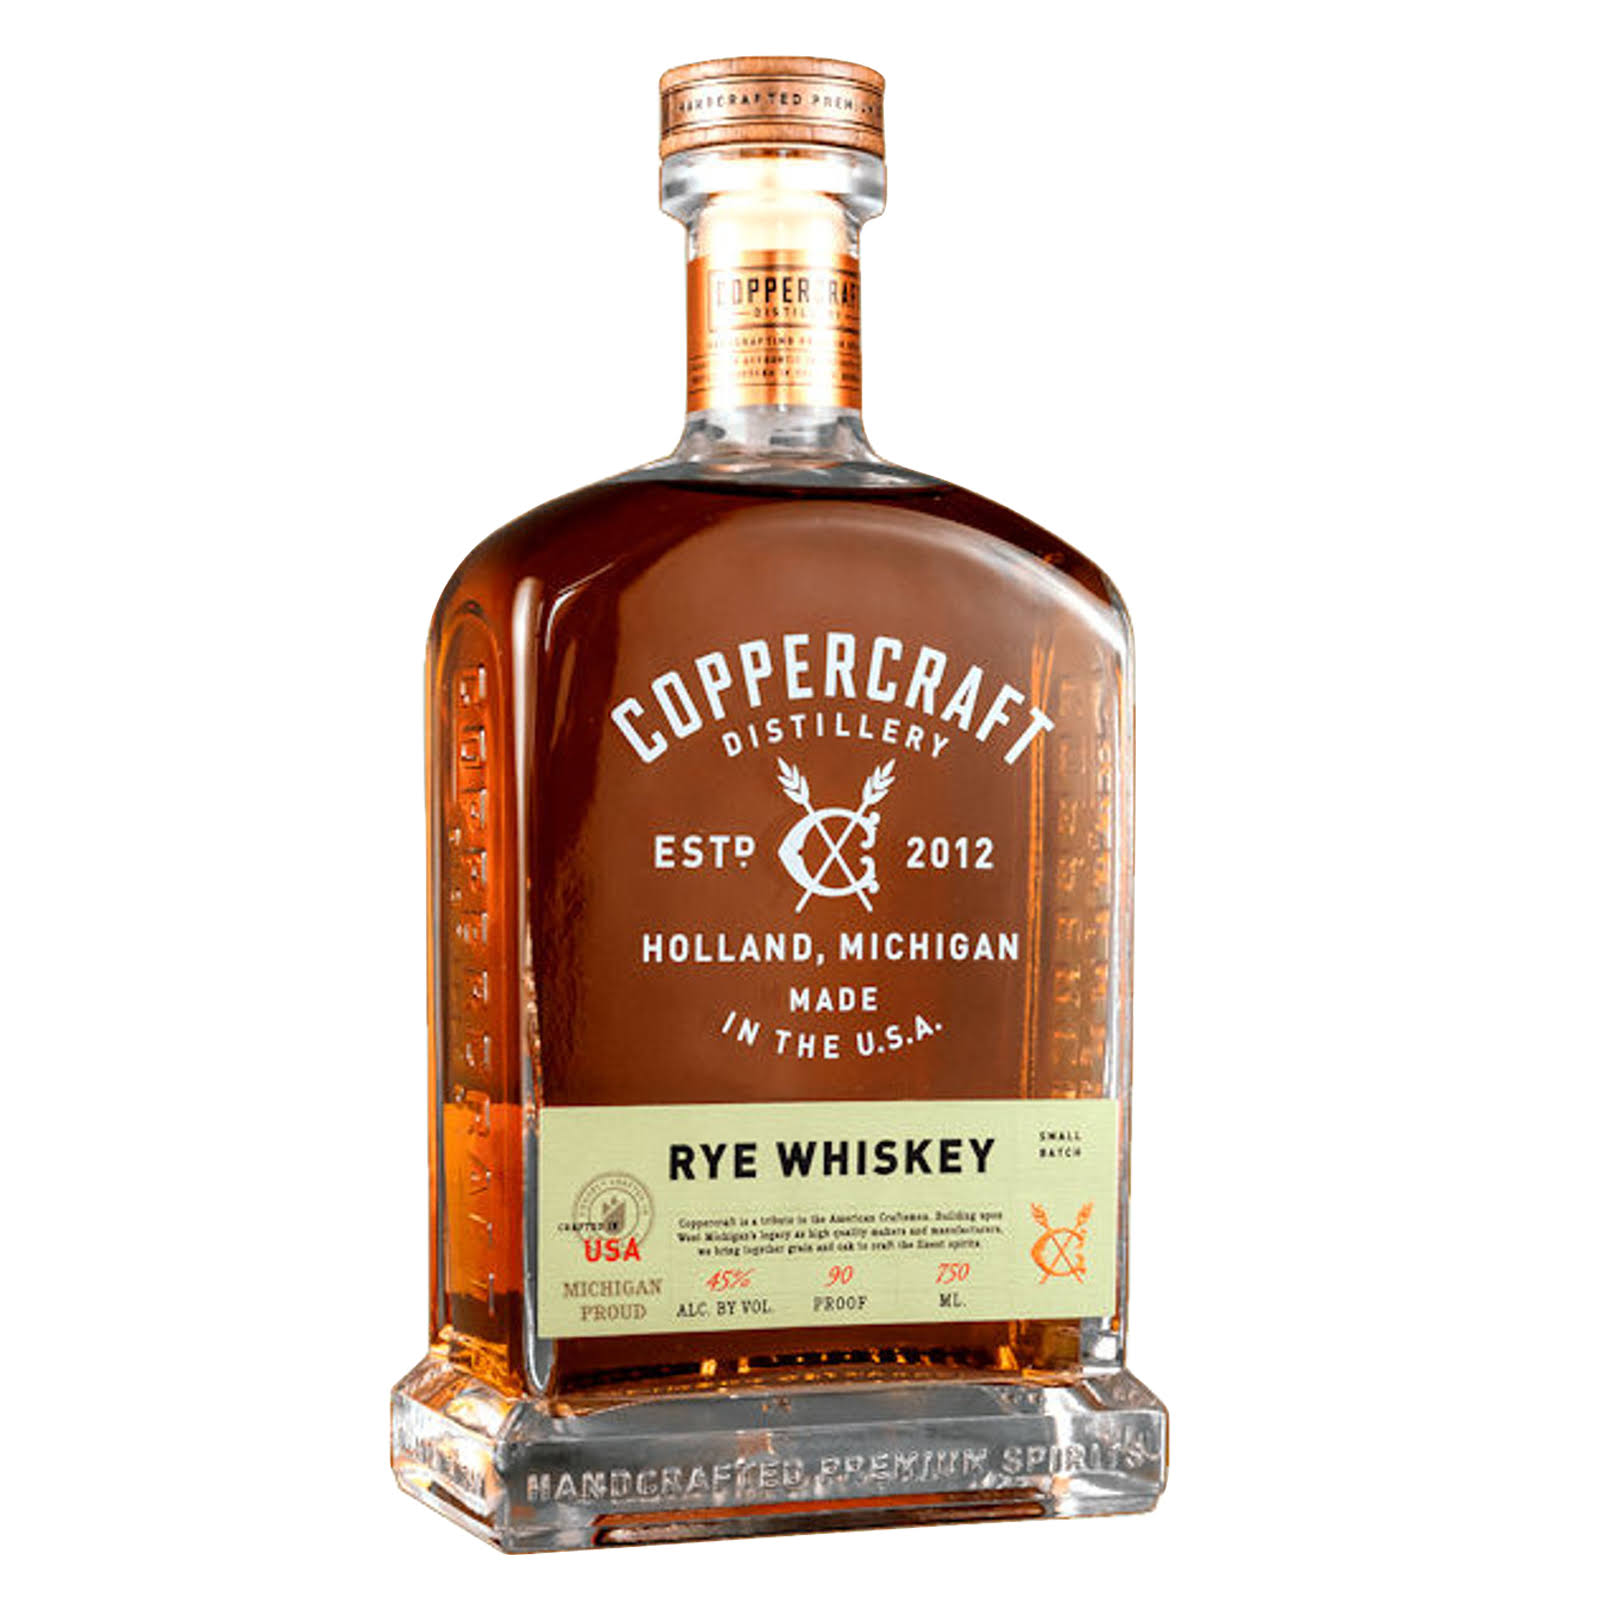 Coppercraft Rye Whiskey - 750ml